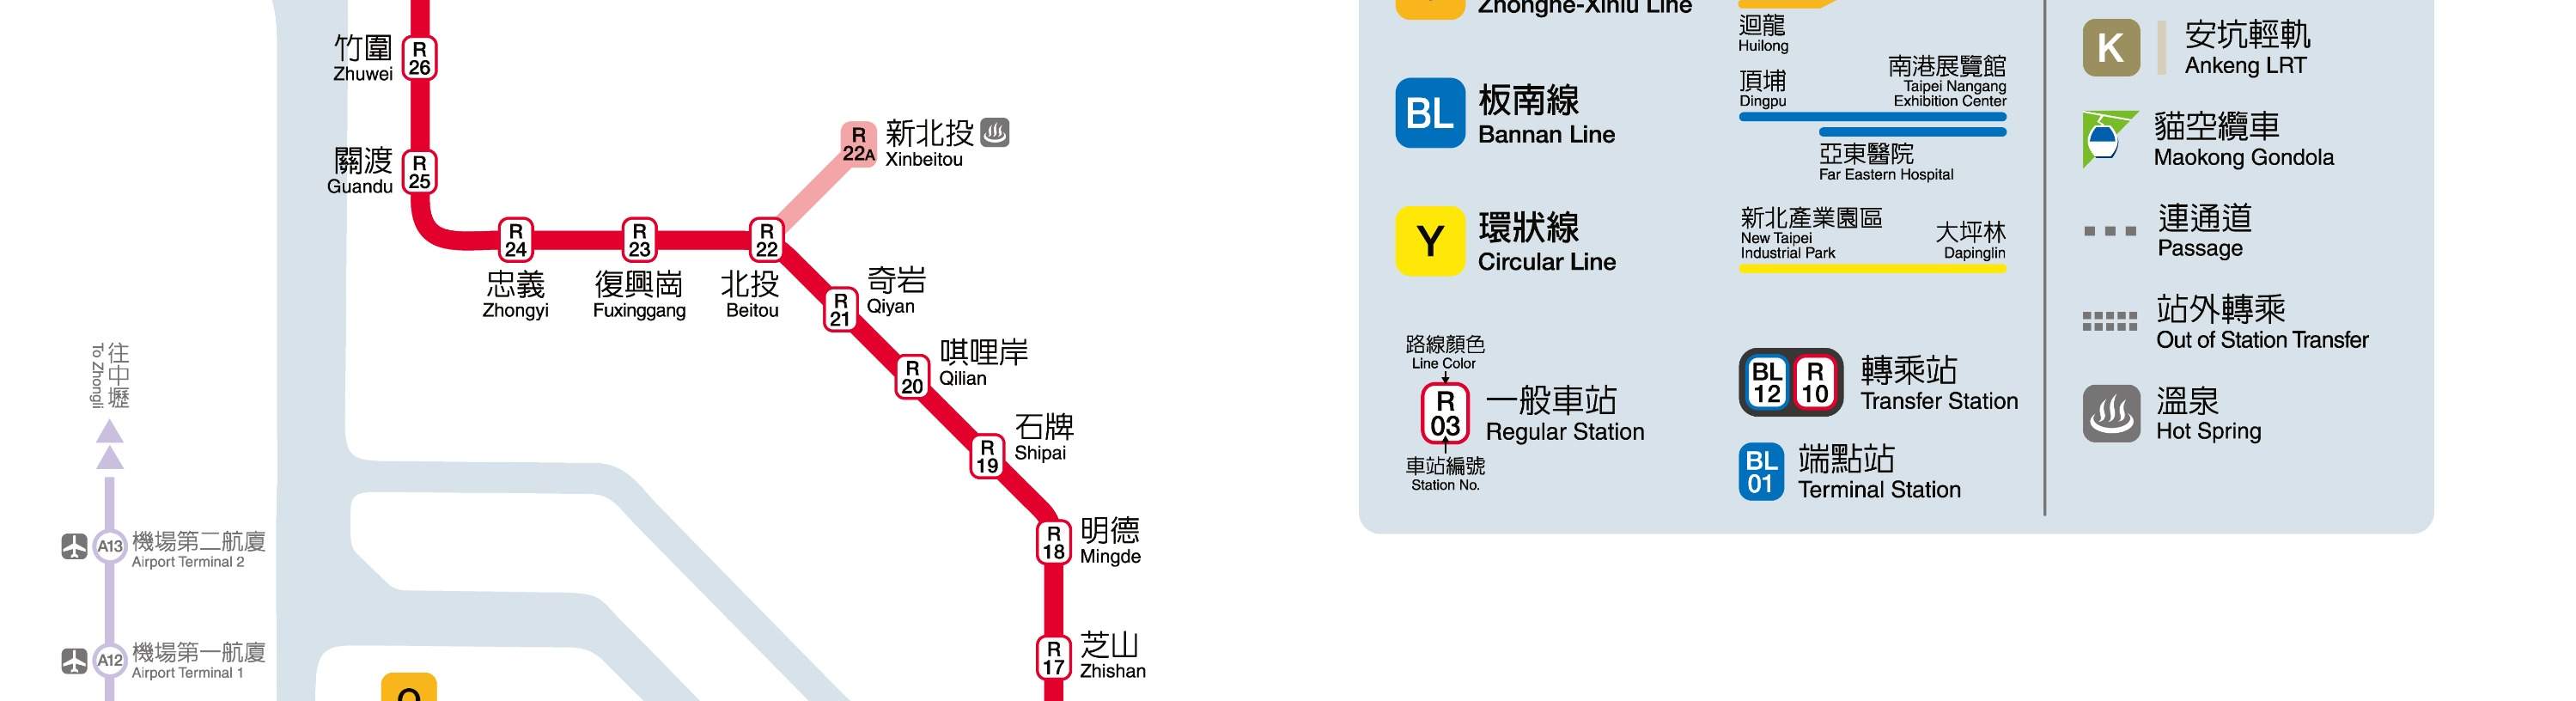 Train à grande vitesse de Taïwan : pass illimité 2/3 jours - Klook